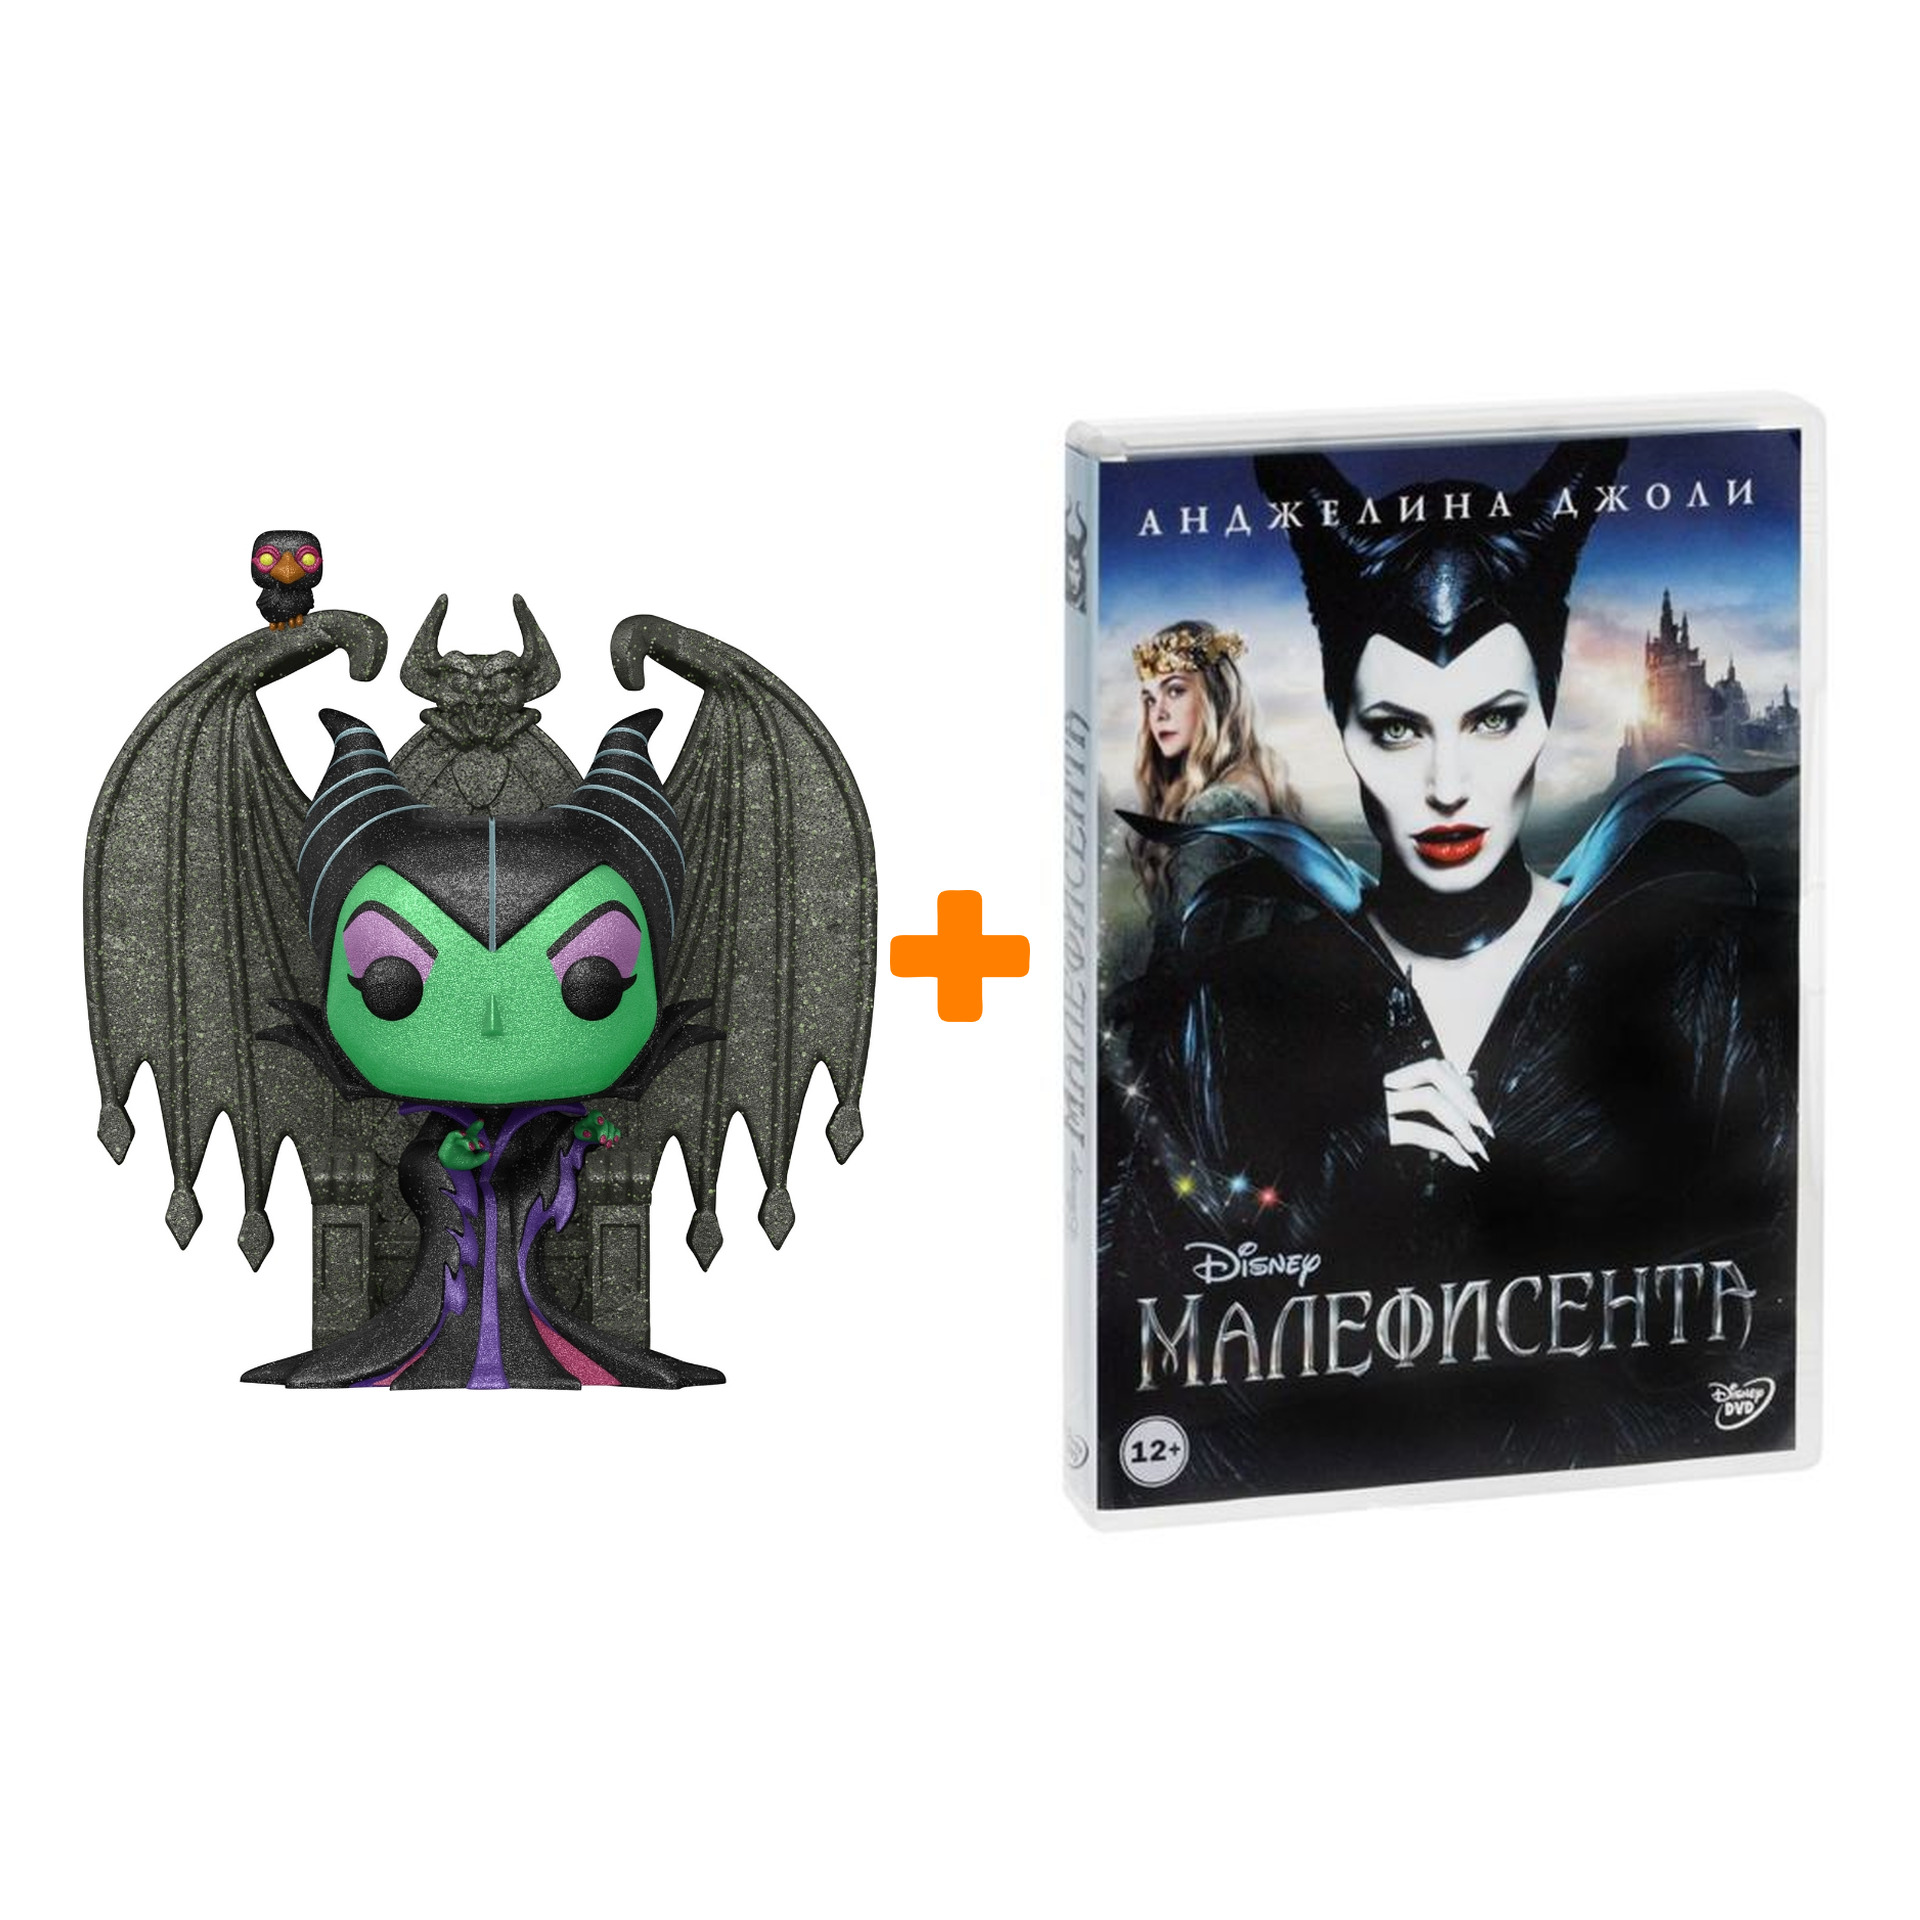 Набор фигурка Disney Villains Maleficent + Малефисента (региональное издание) (DVD) цена и фото